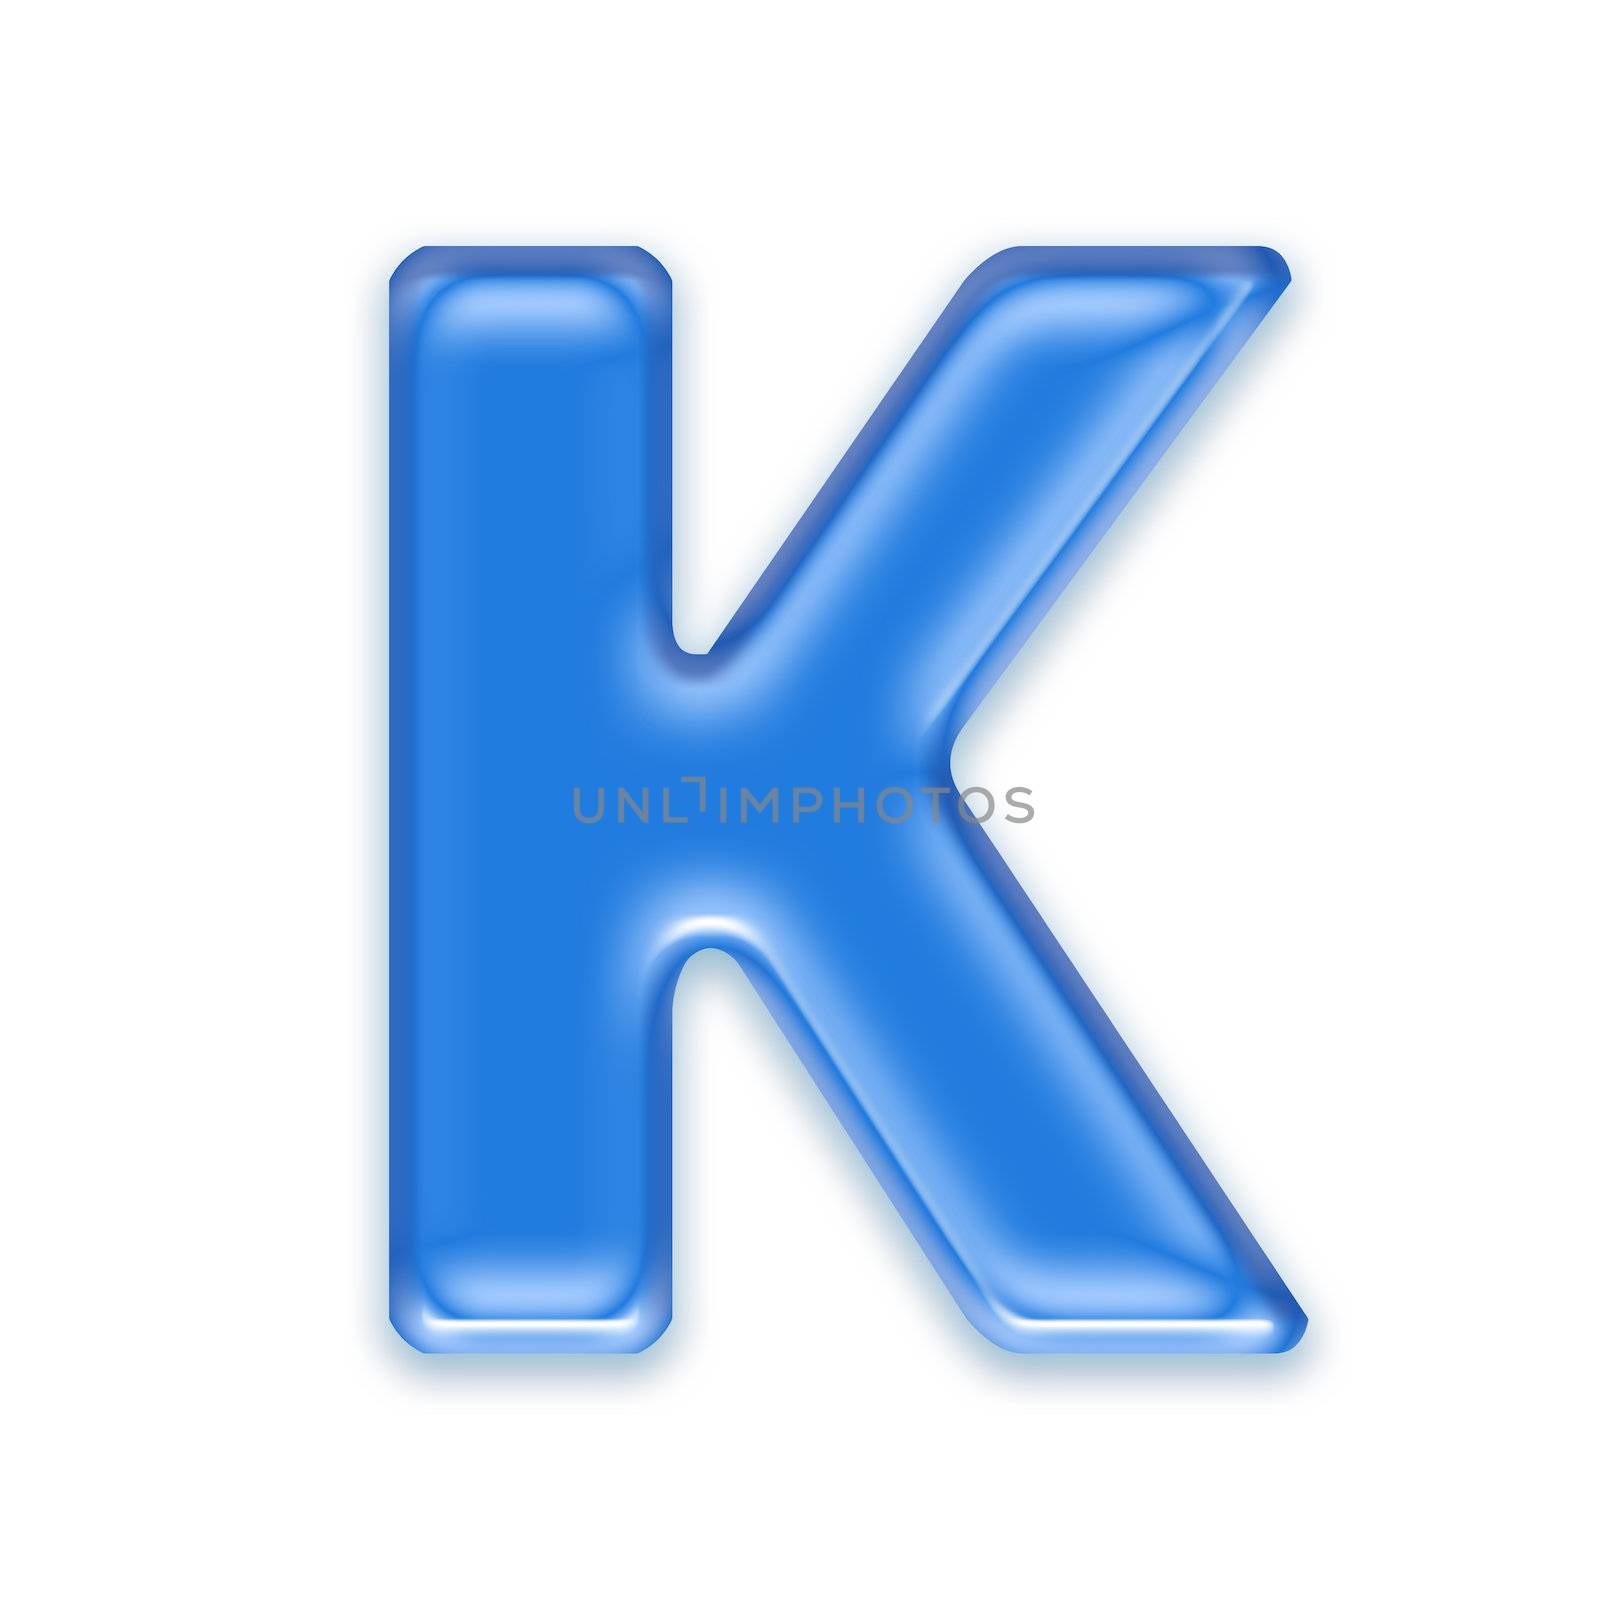 Aqua letter isolated on white background  - K